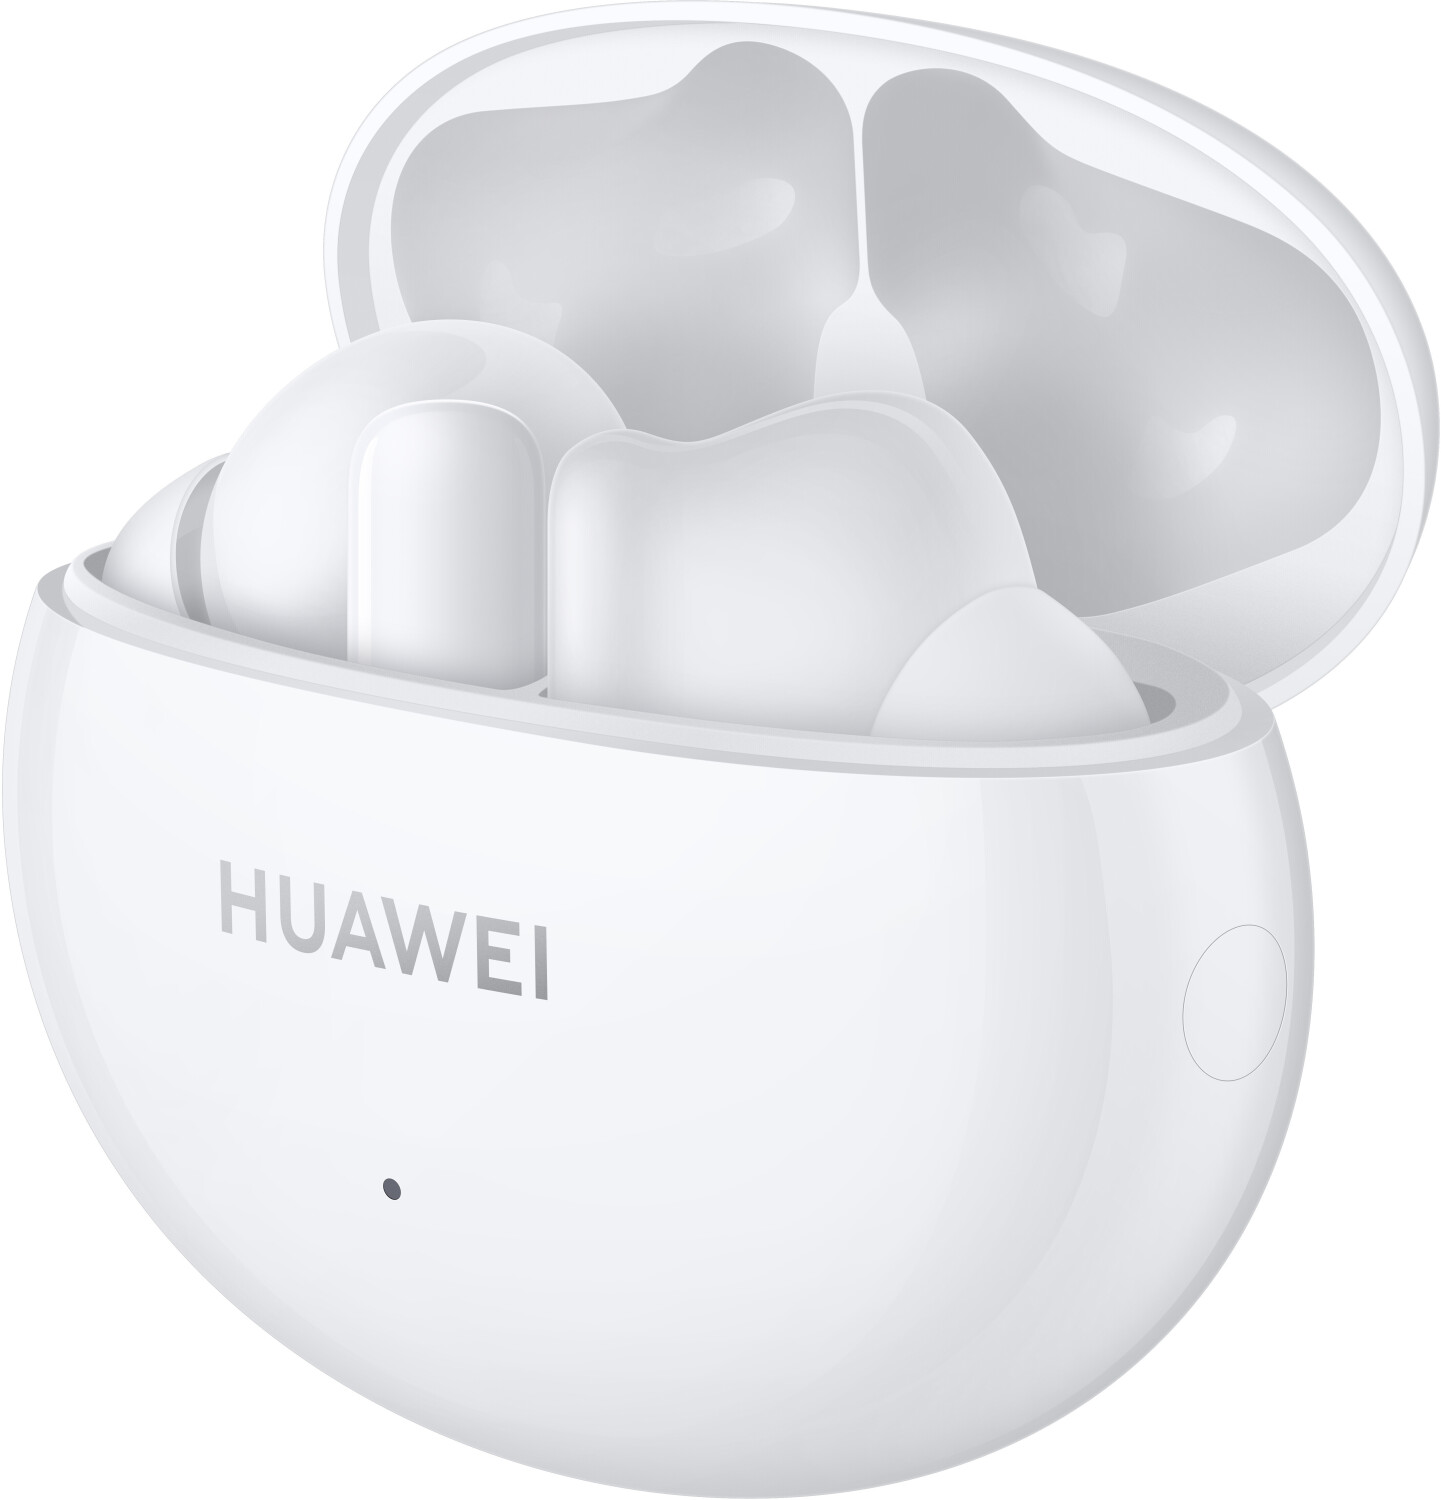 Análisis de los Huawei FreeBuds 4i y opinión